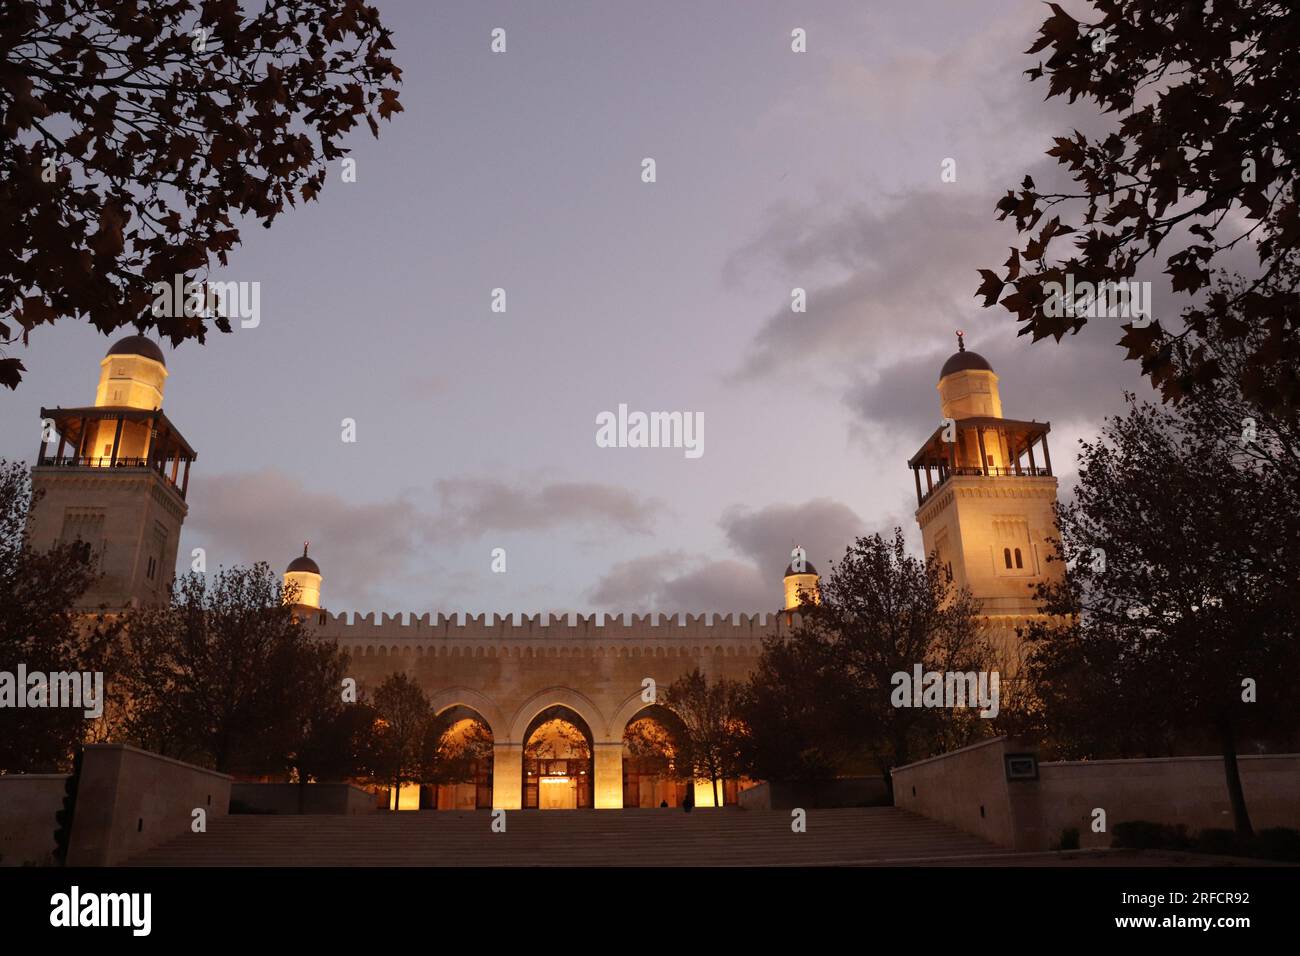 Amman, Jordanie : la plus belle mosquée (Mosquée du Roi Hussein Bin Talal) en automne Banque D'Images